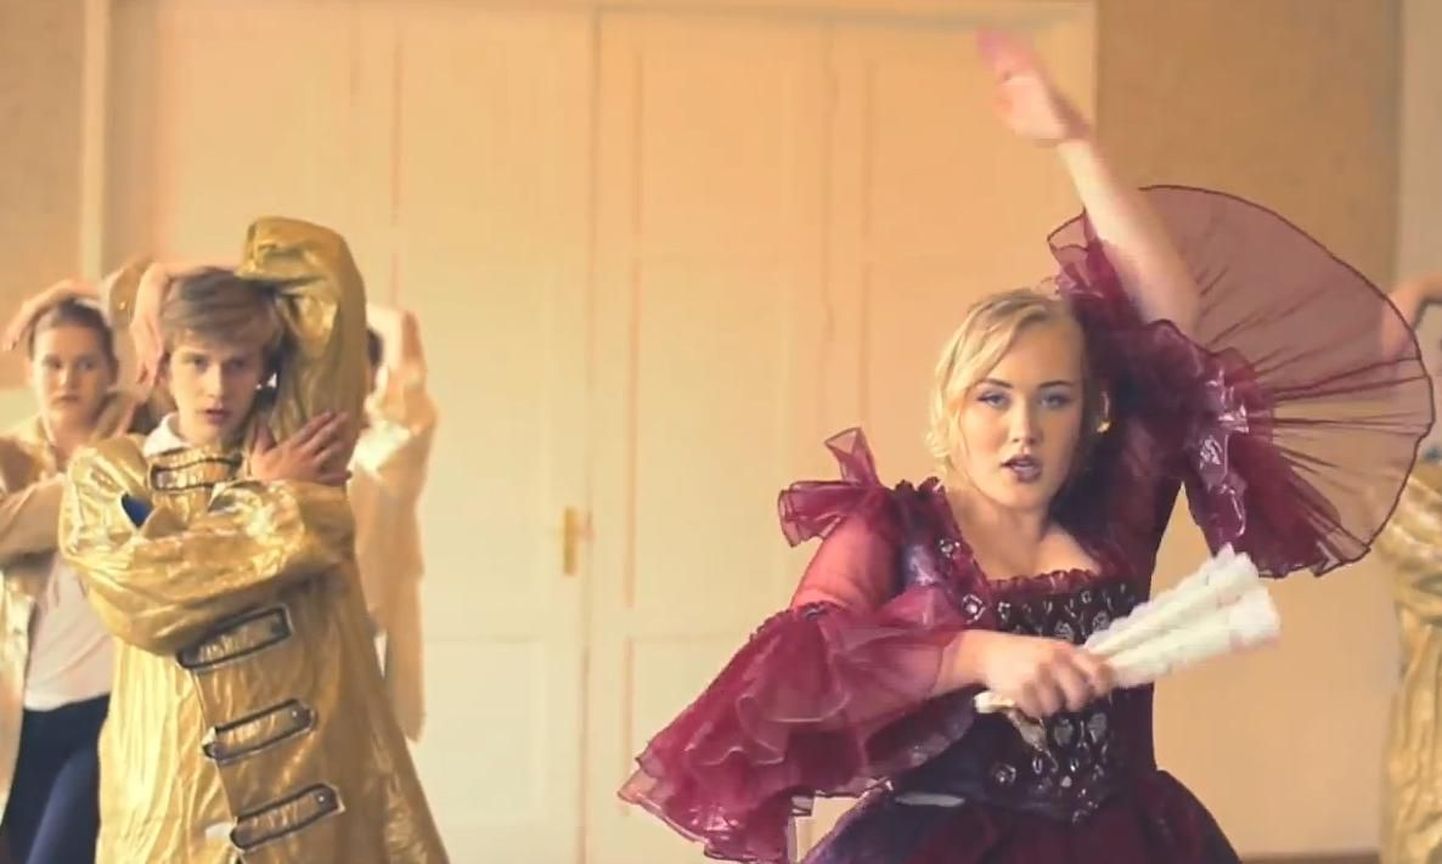 Noored tantsijad kaverdasid Madonna kuulsa muusikavideo «Vogue»